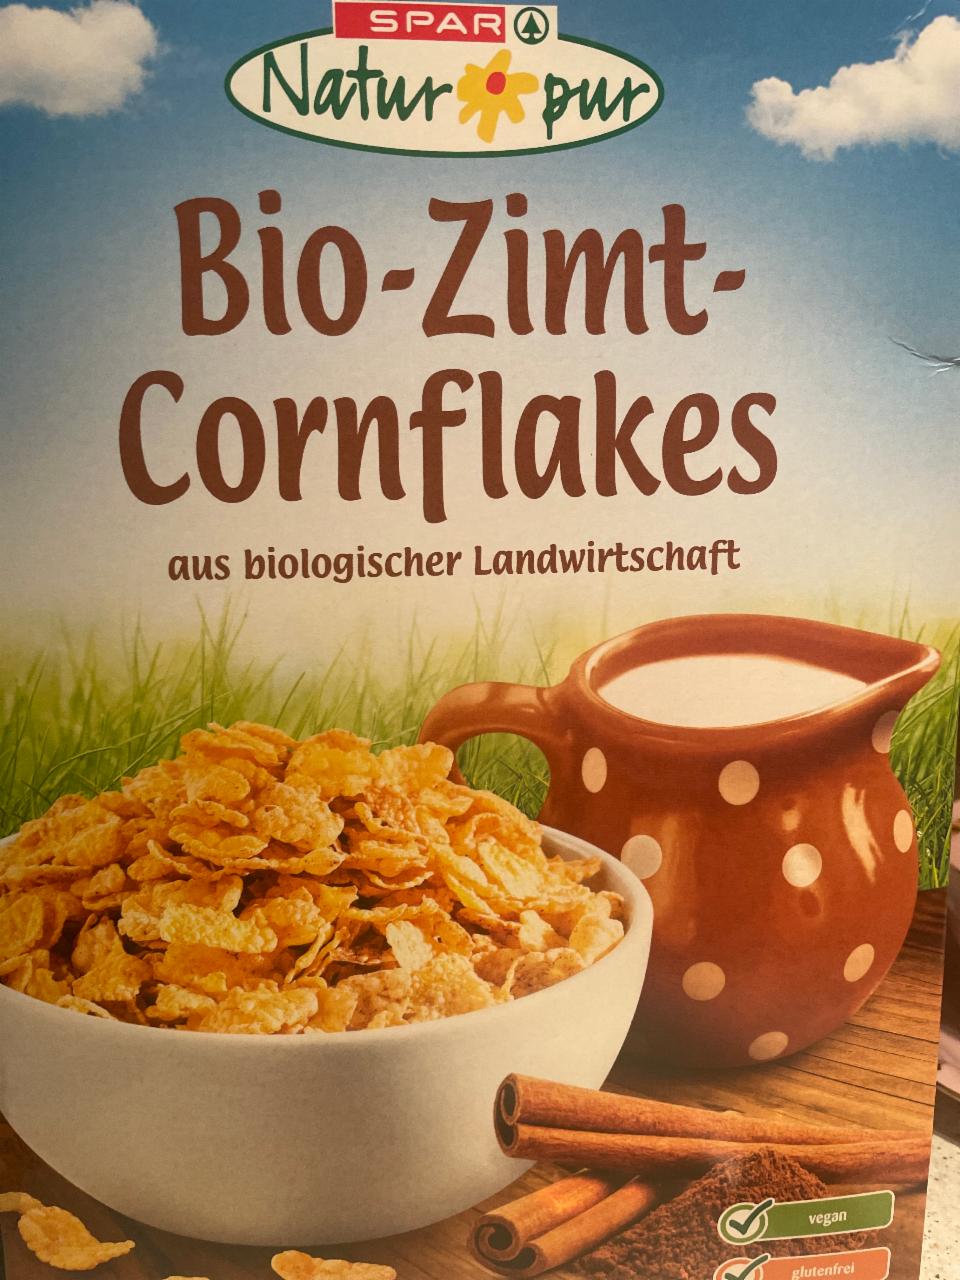 Fotografie - Bio-Zimt-Cornflakes Spar Natur pur